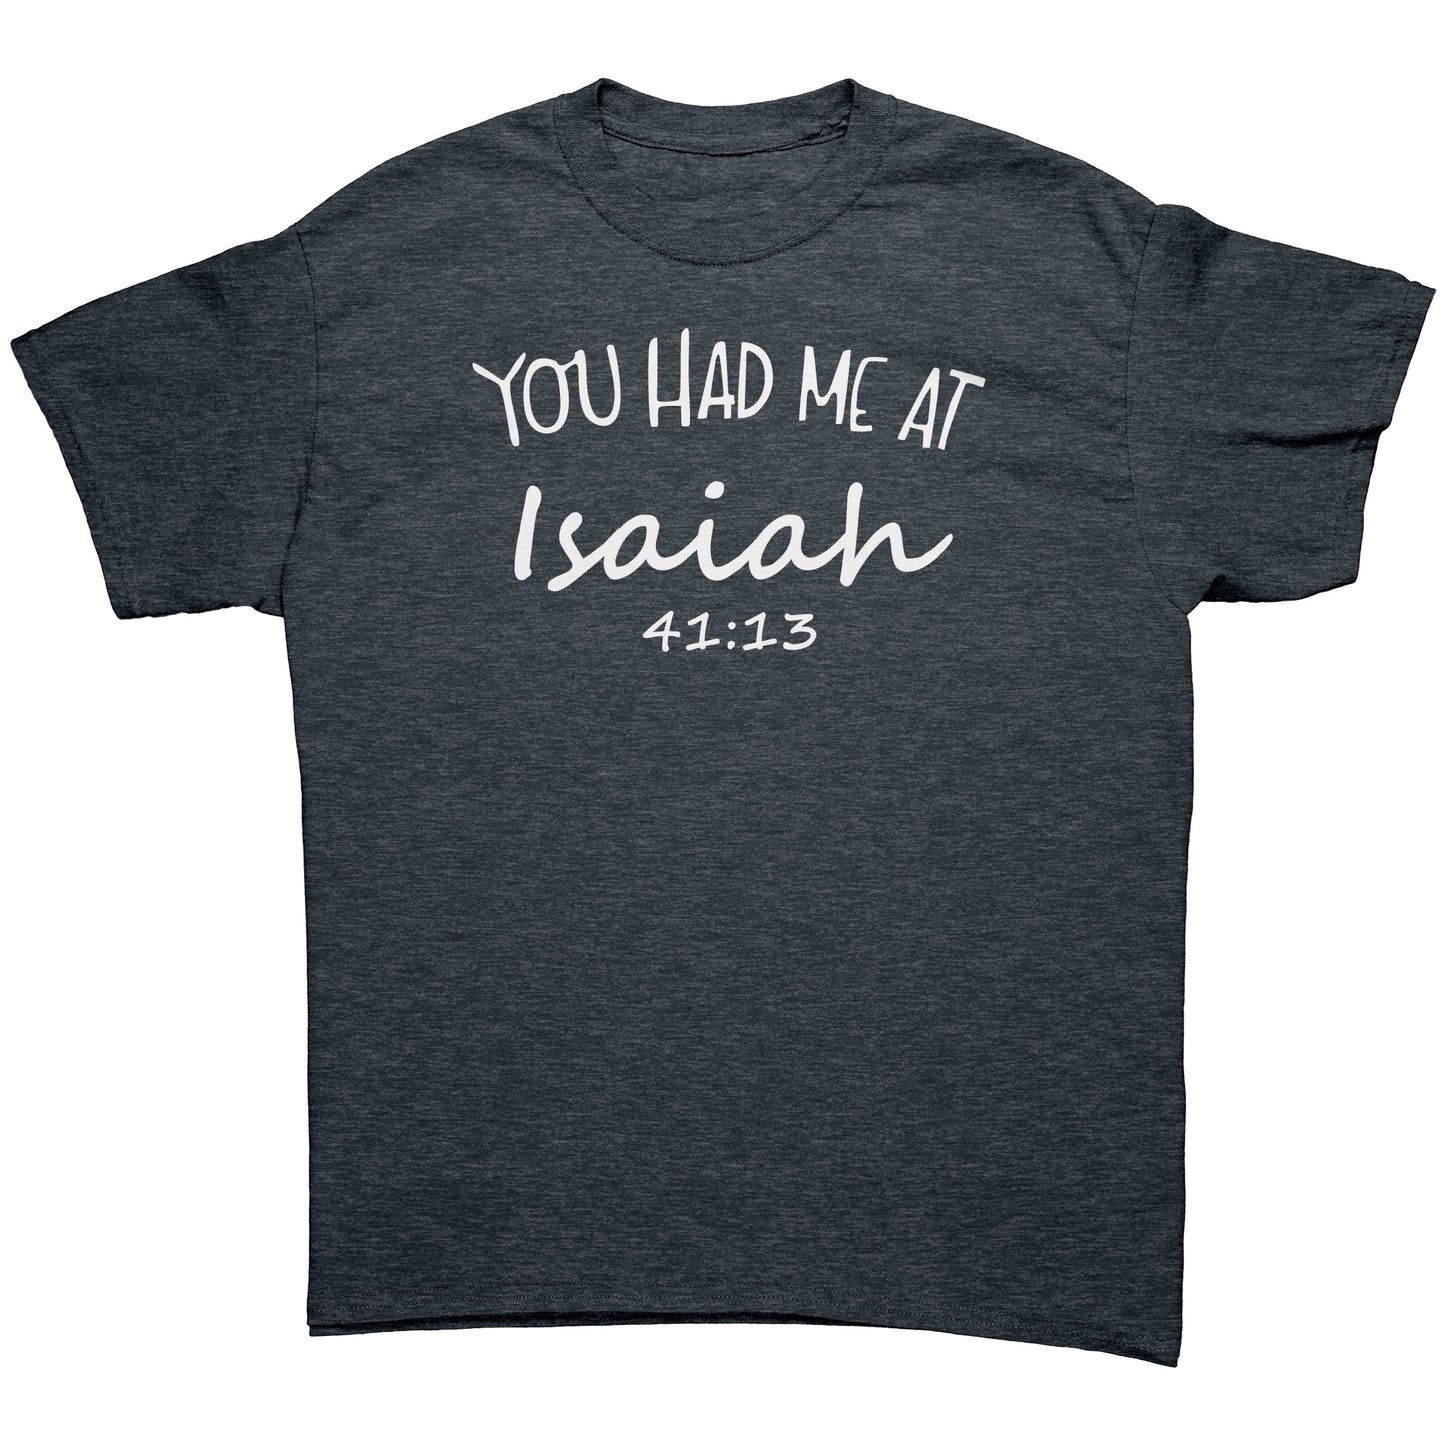 You Had Me At Isaiah 41:13 Men's T-Shirt Part 2